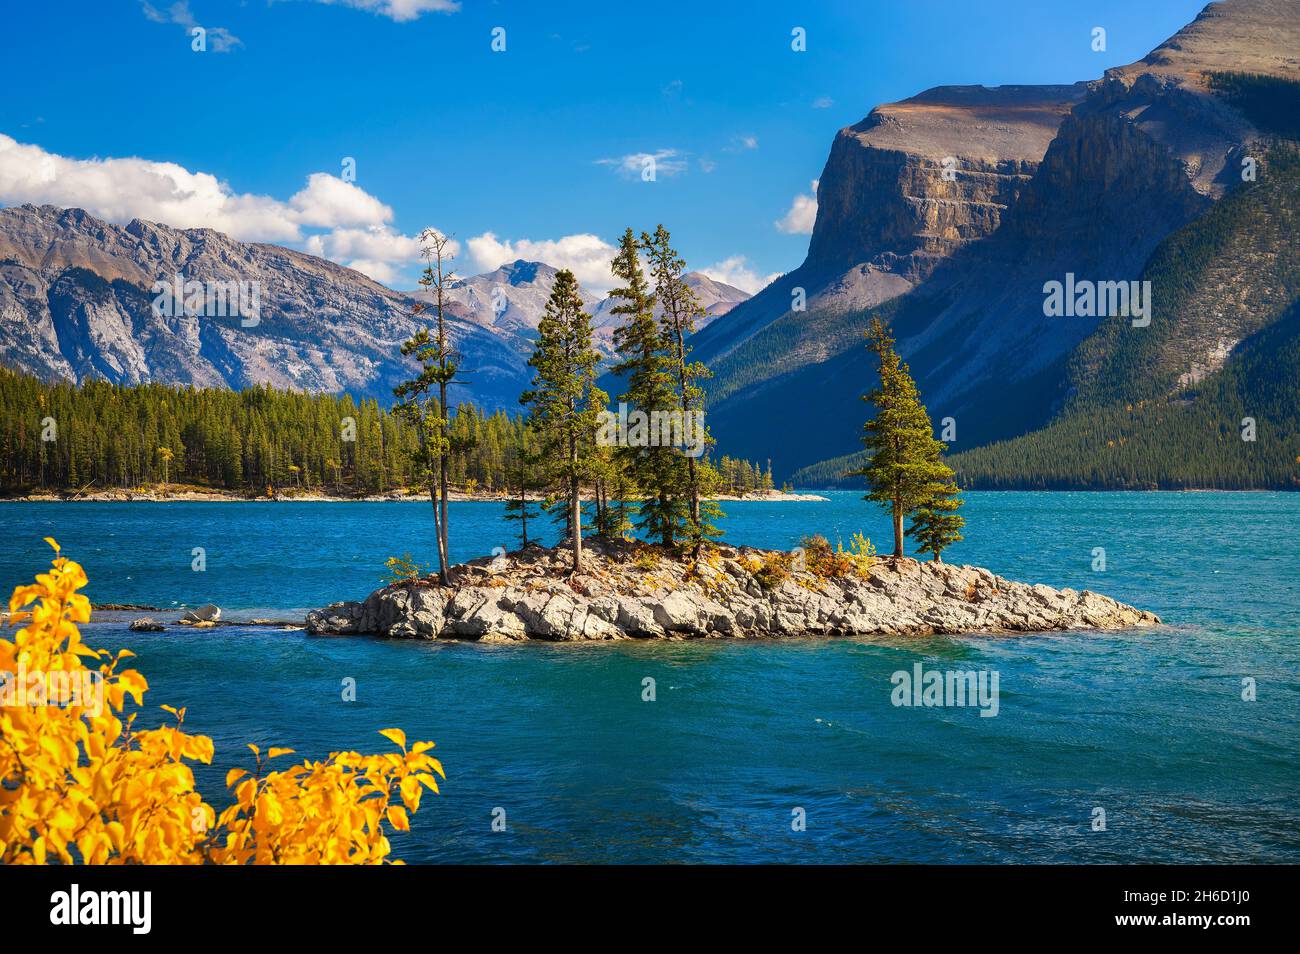 Petite île avec arbres sur le lac Minnewanka dans le parc national Banff, Canada Banque D'Images